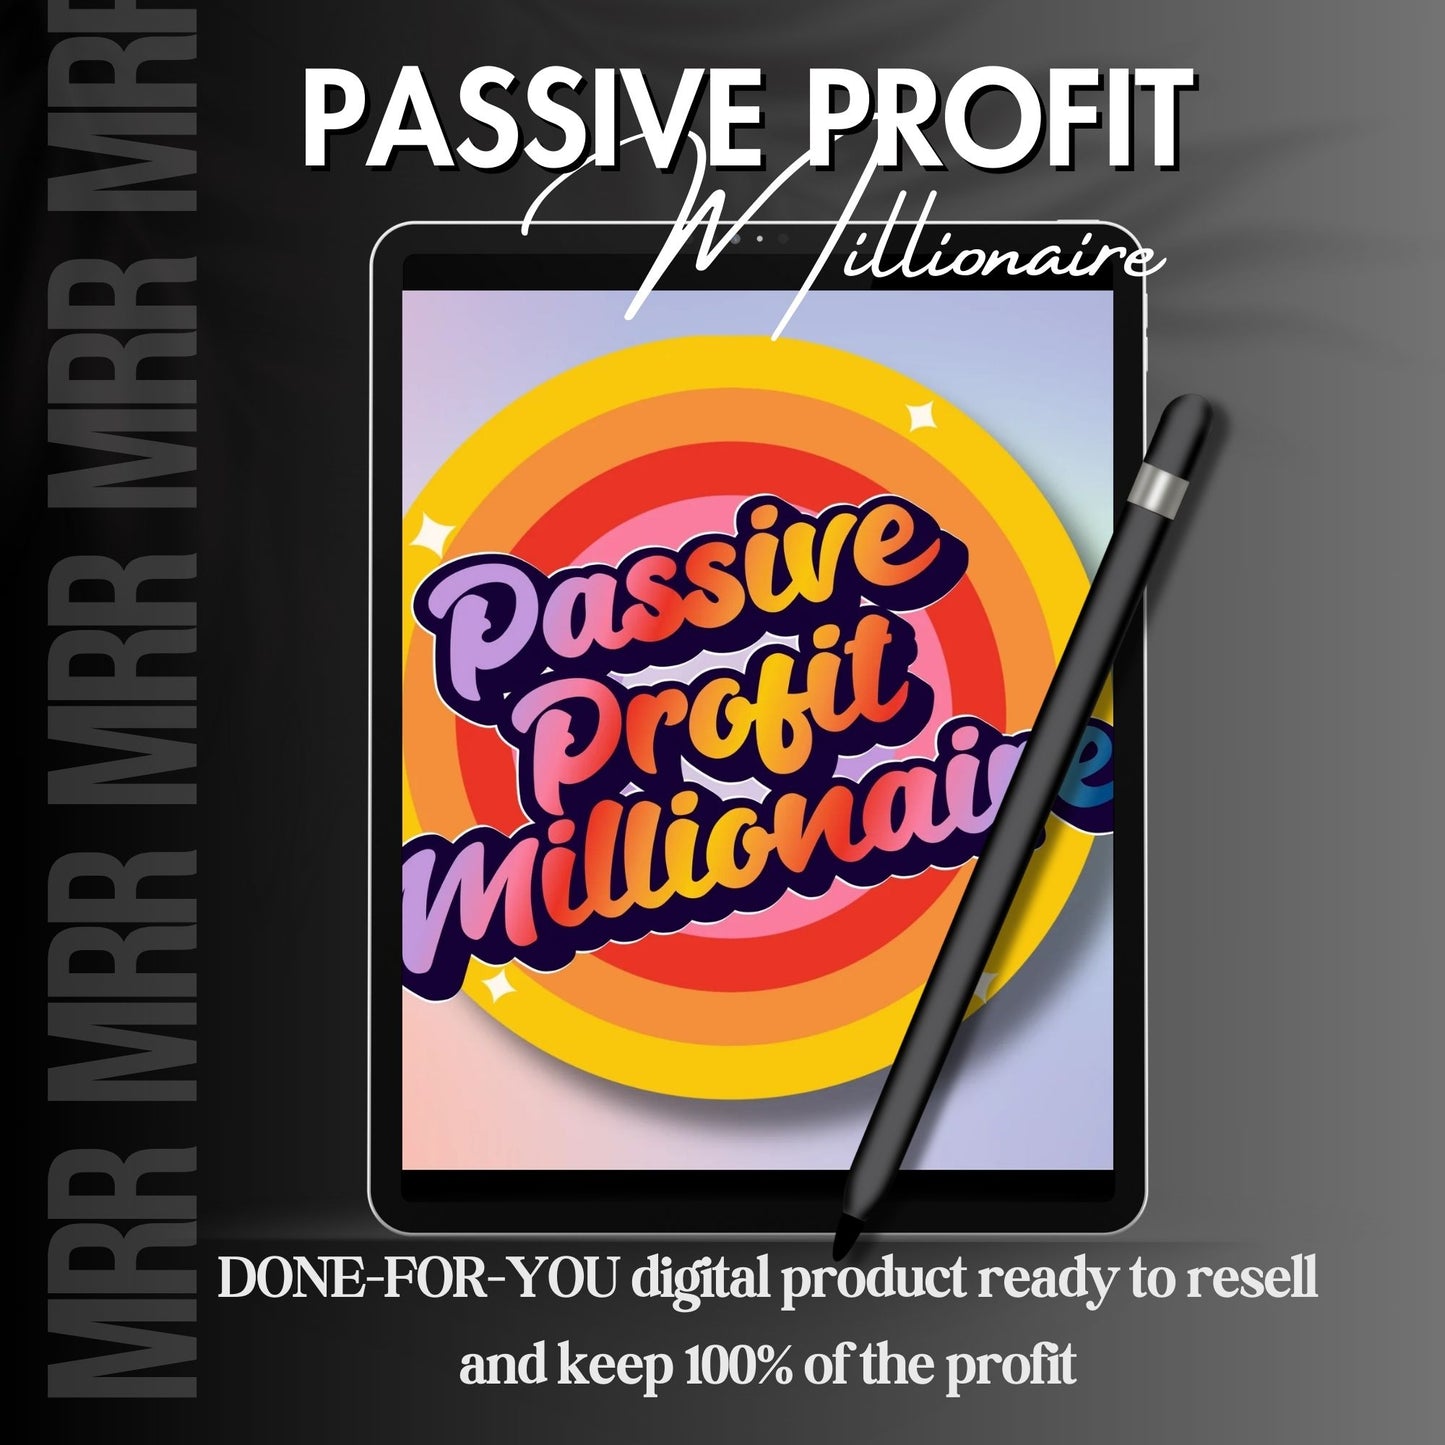 Passive Profit Millionaire Course with MRR